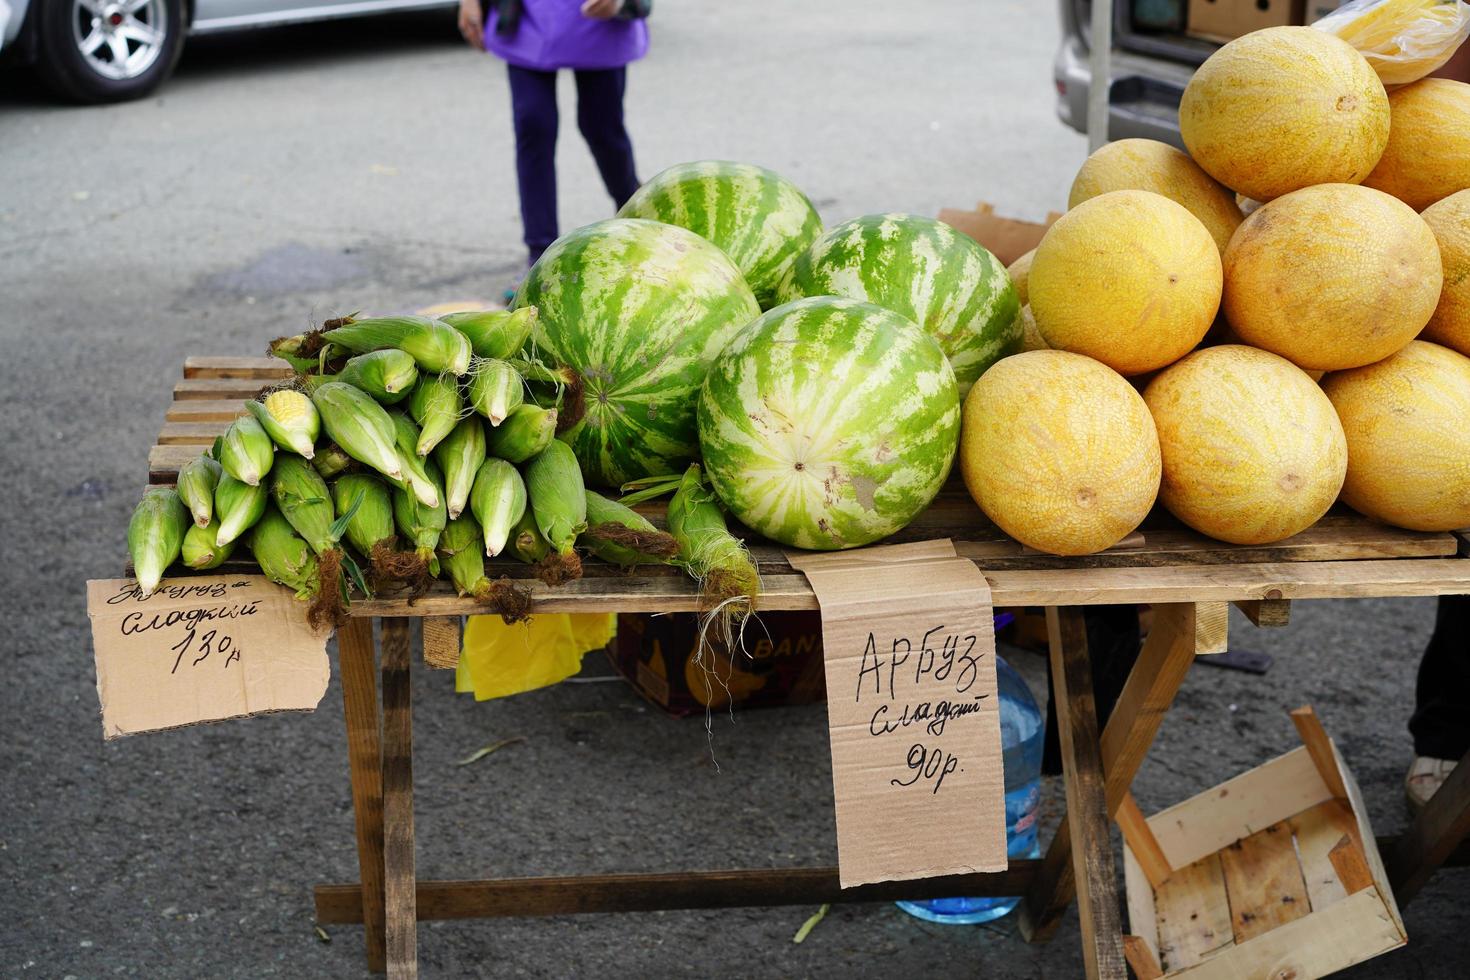 straathandel in groenten en fruit. vladivostok, rusland foto